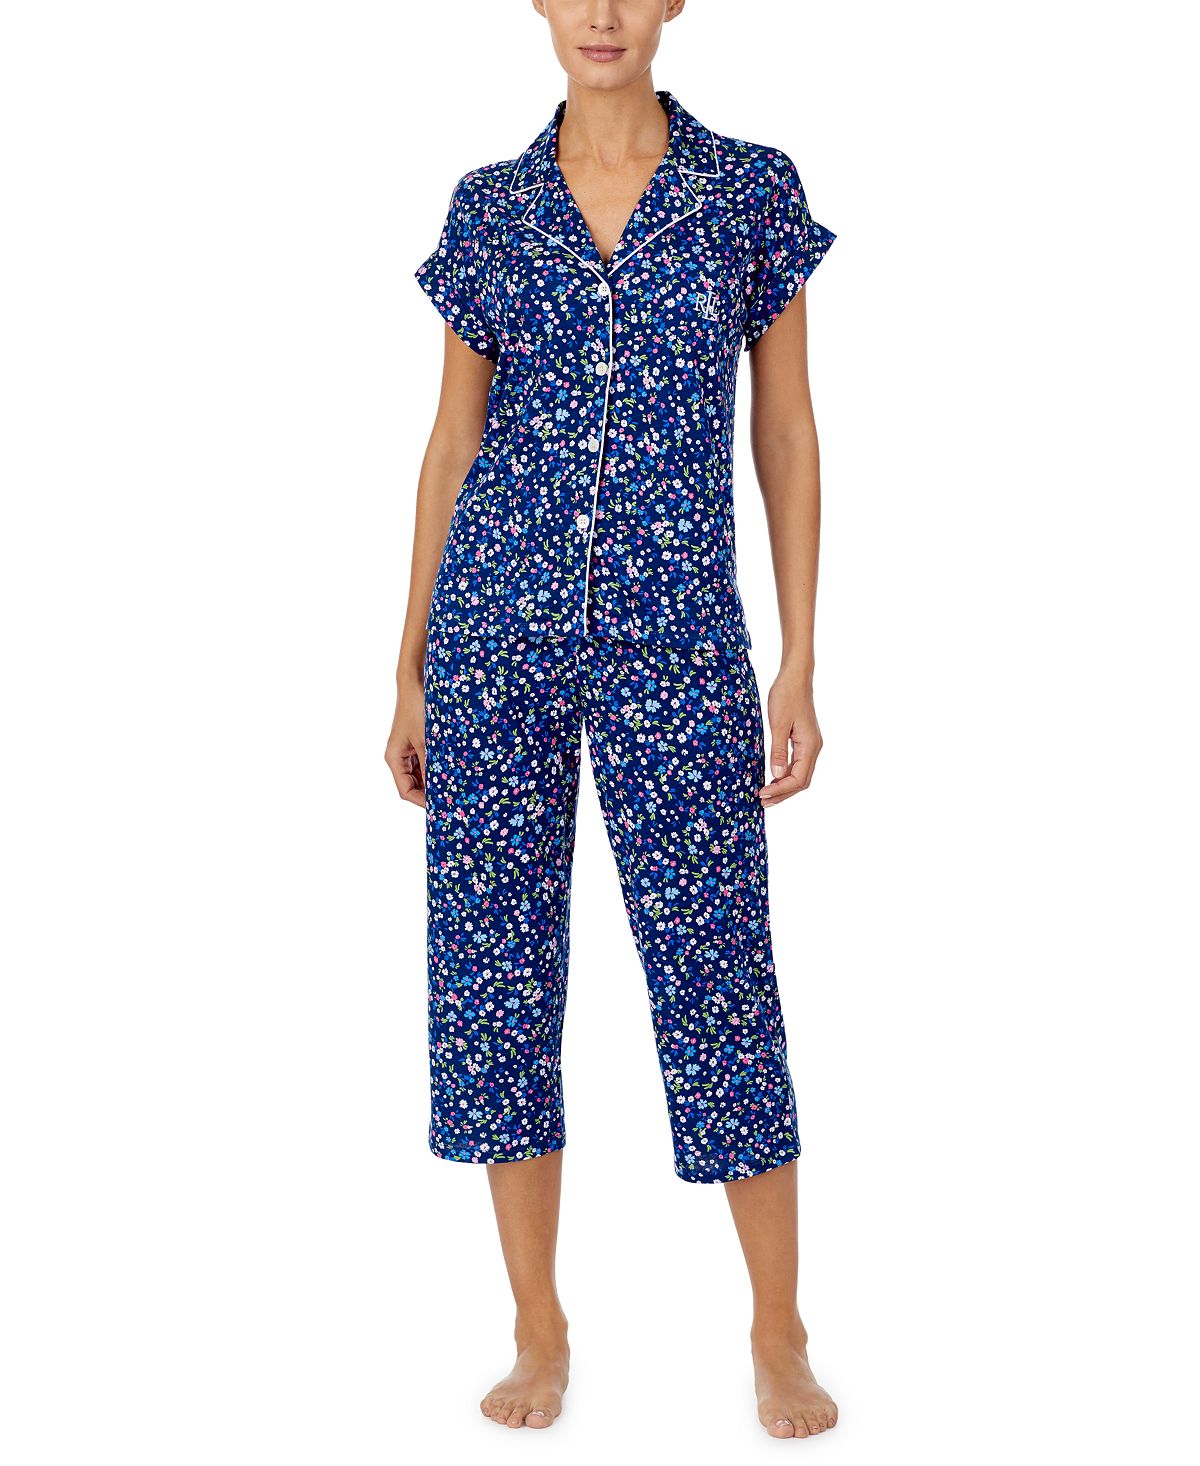 Lauren Ralph Lauren Short Sleeve Top & Capri Pajama Set Navy/prt